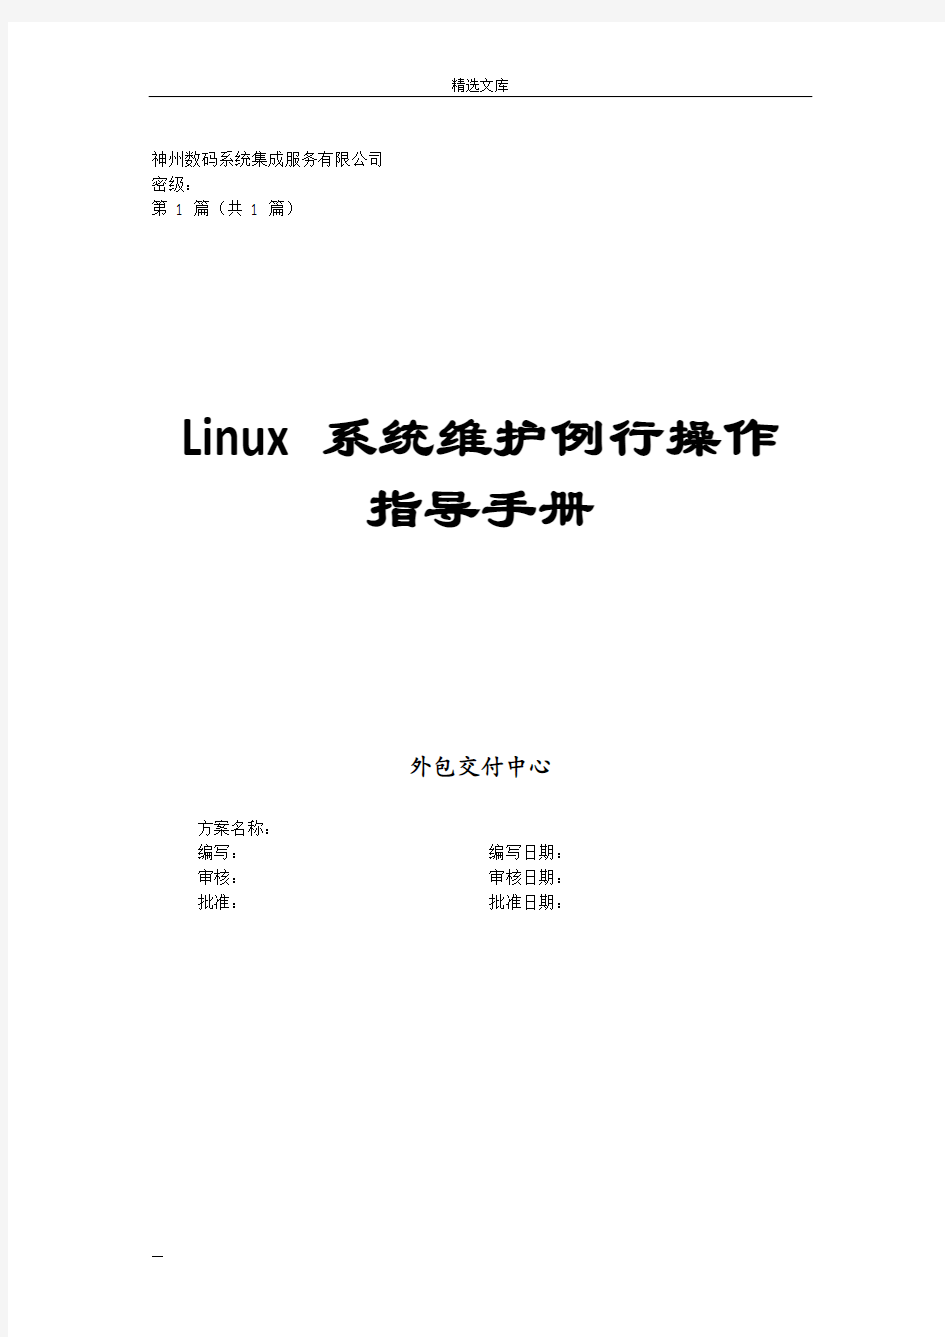 Linux系统维护例行操作指导手册